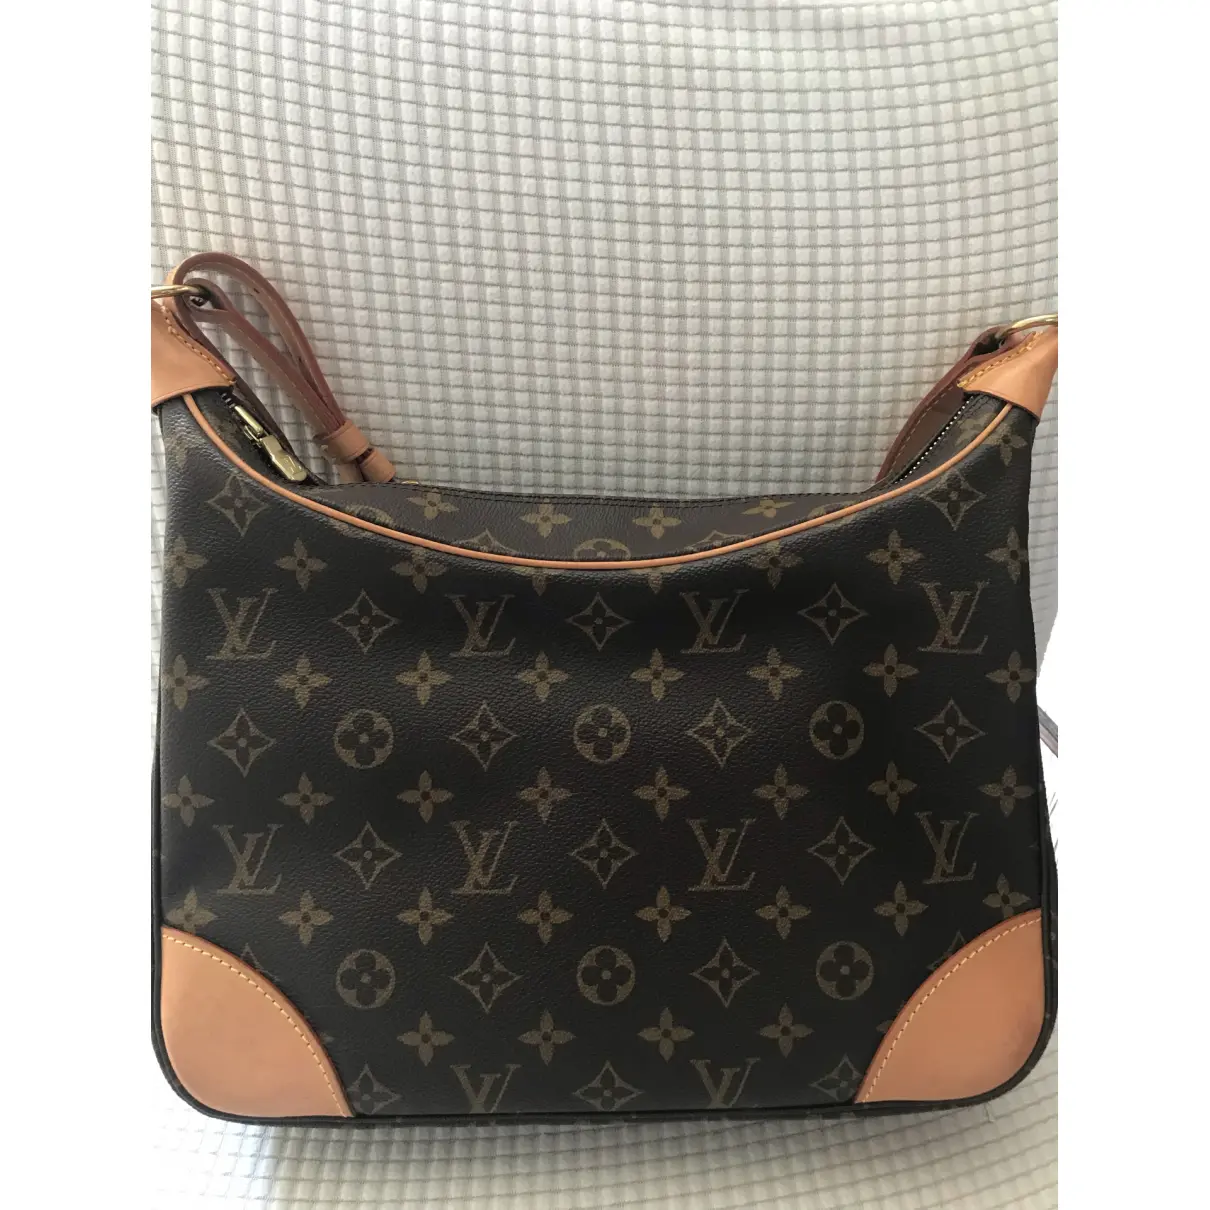 Buy Louis Vuitton Boulogne leather handbag online - Vintage